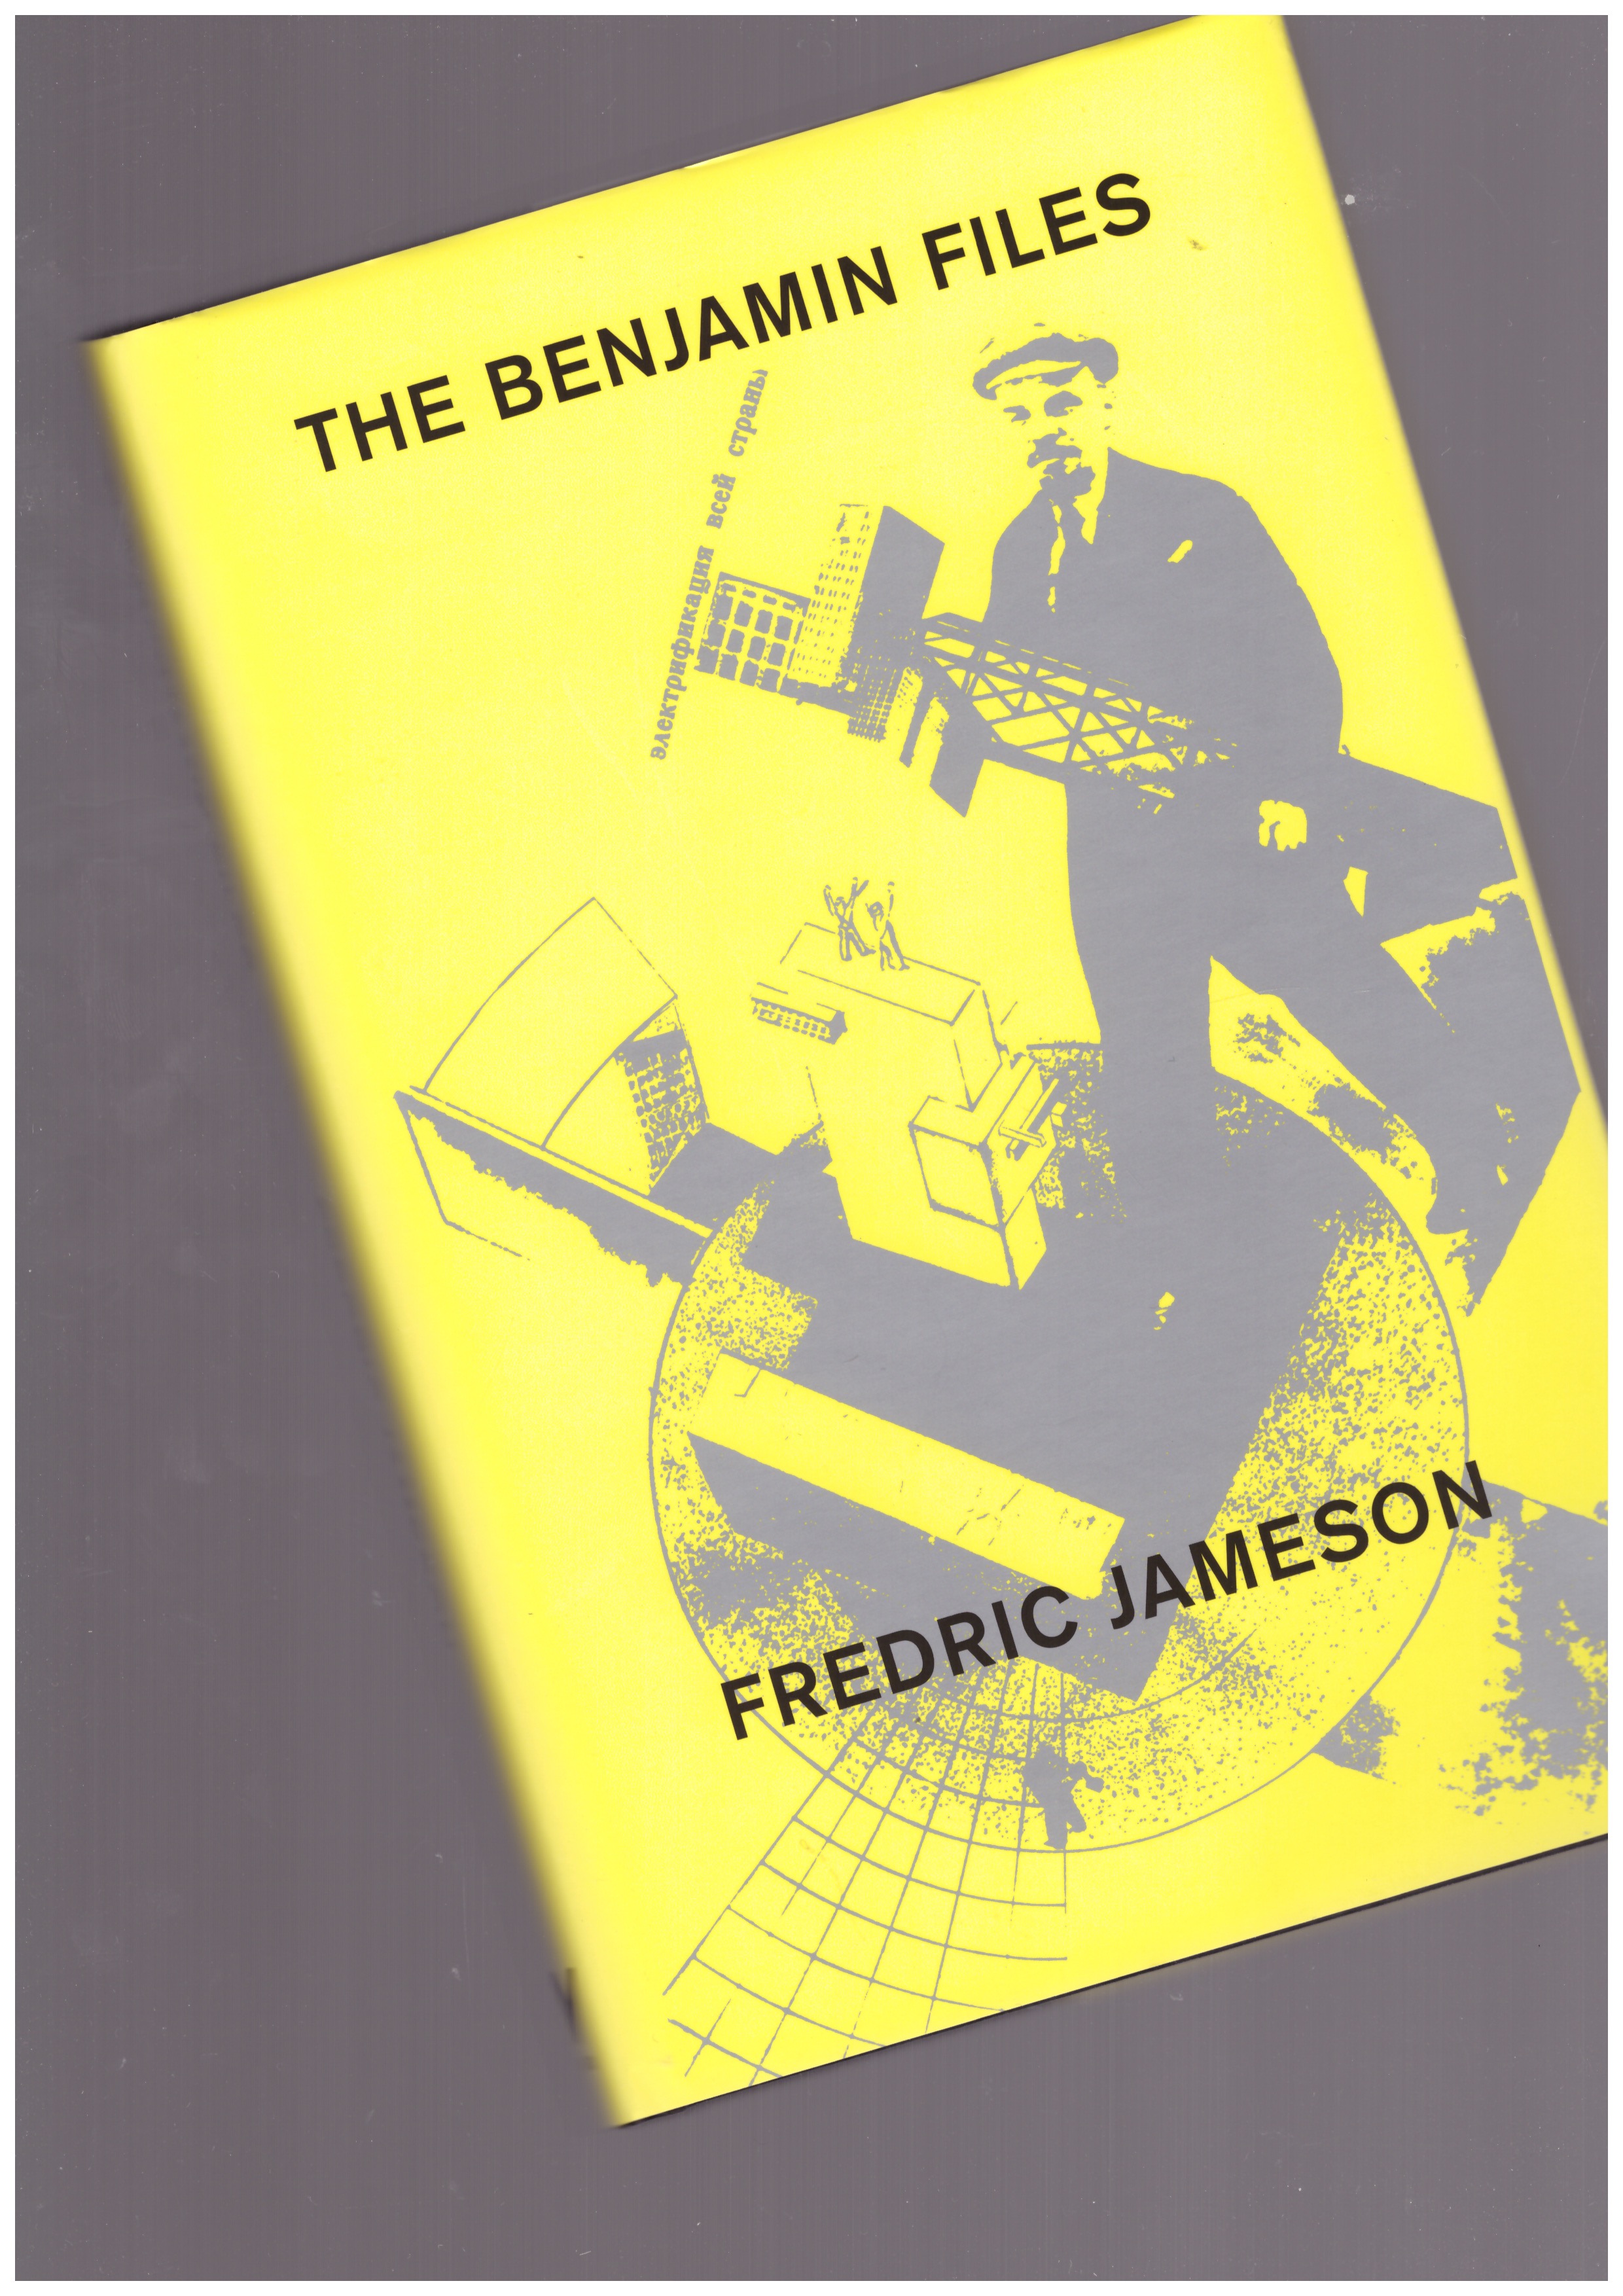 JAMESON, Frederic - The Benjamin Files